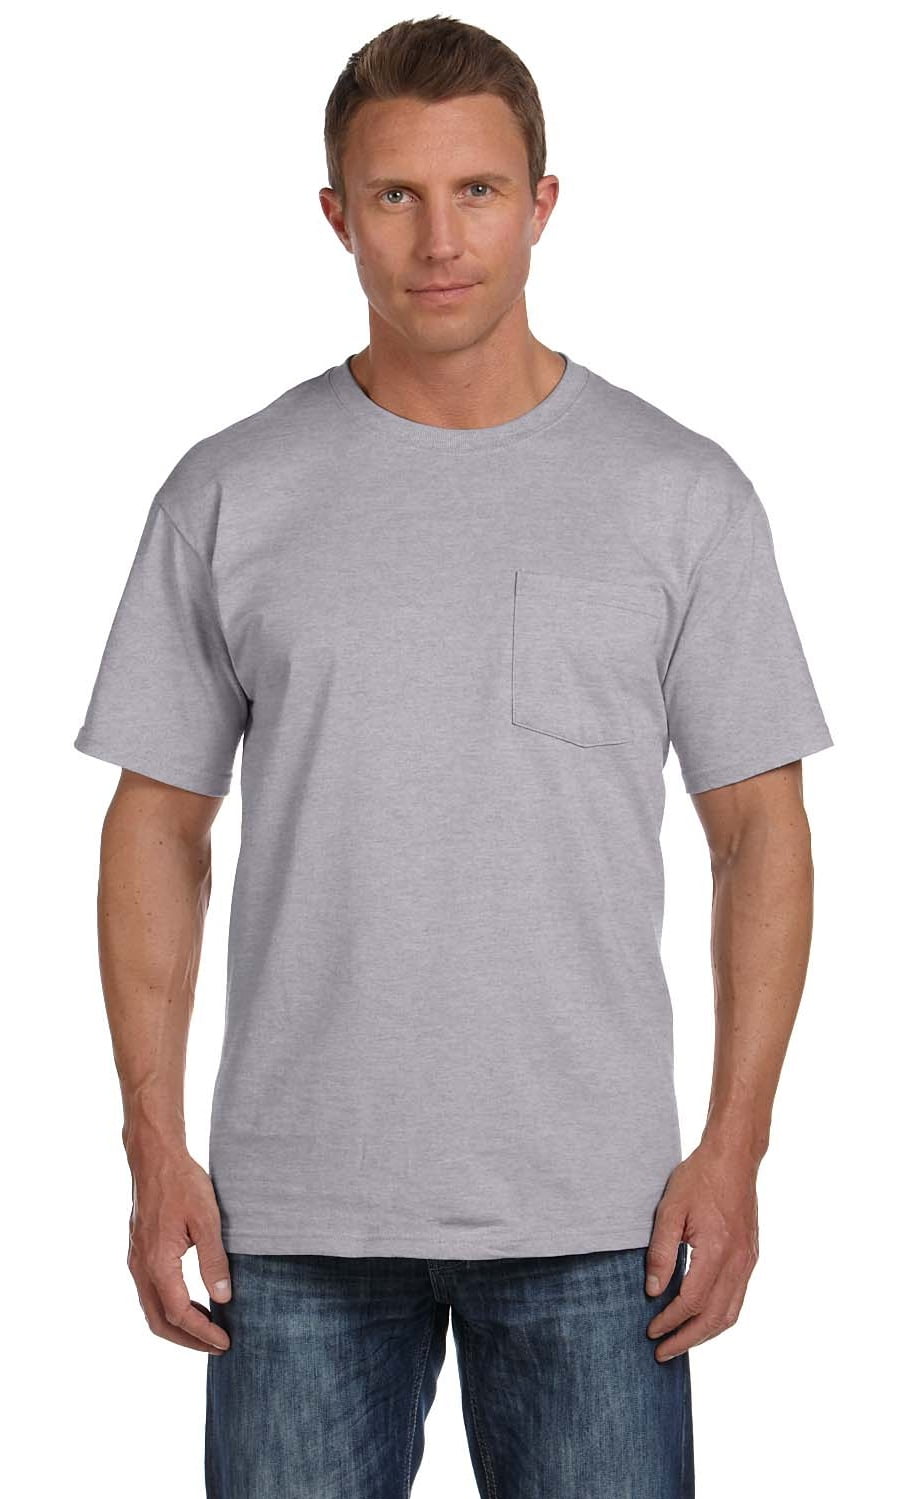 Dexx Texere Crew Neck Undershirt for Men Luxury Shirt in Bamboo Viscose MB6001